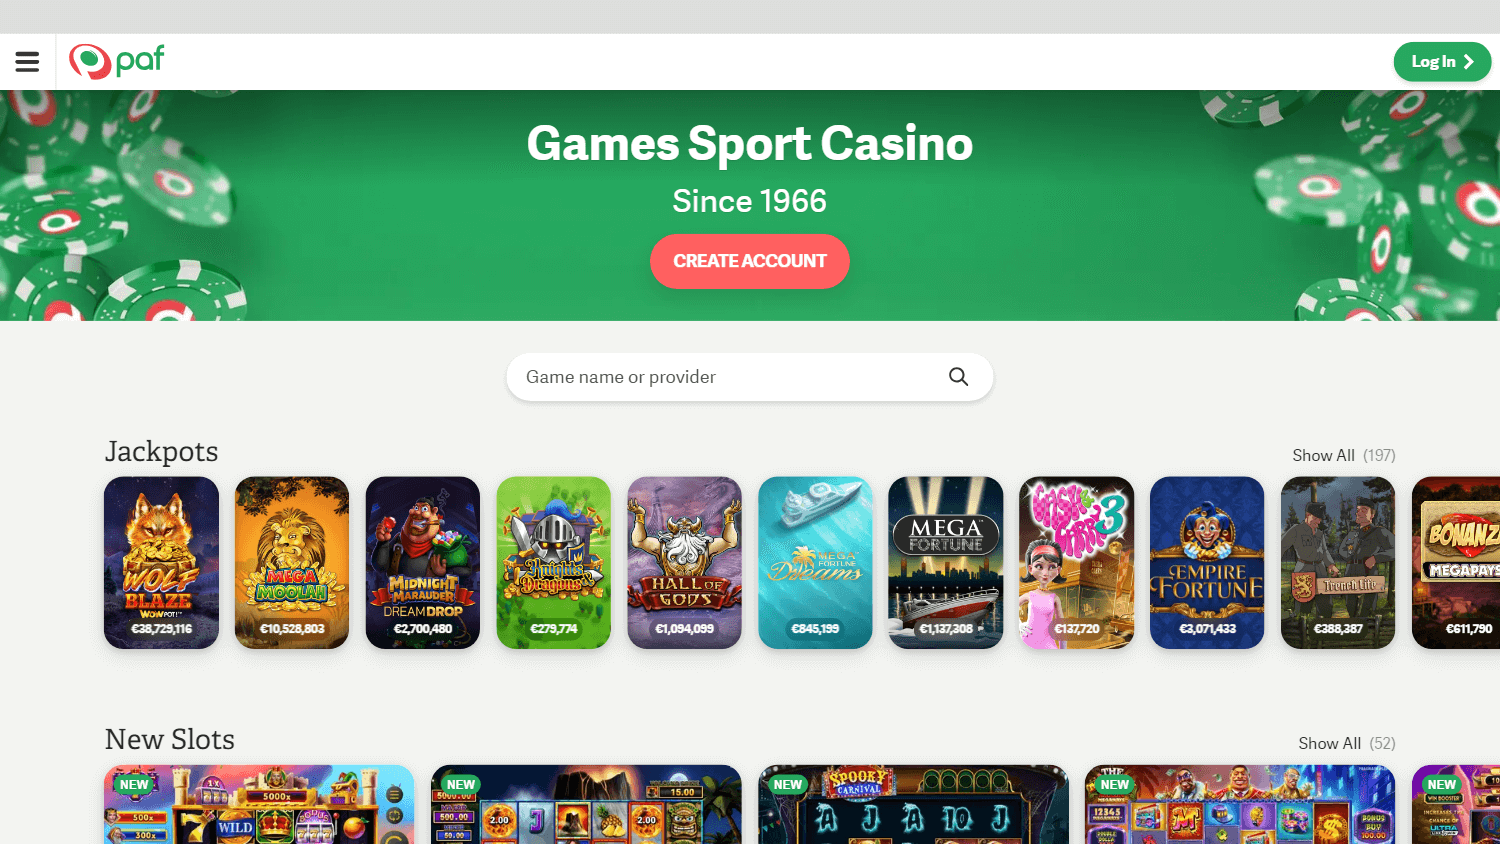 paf_casino_homepage_desktop